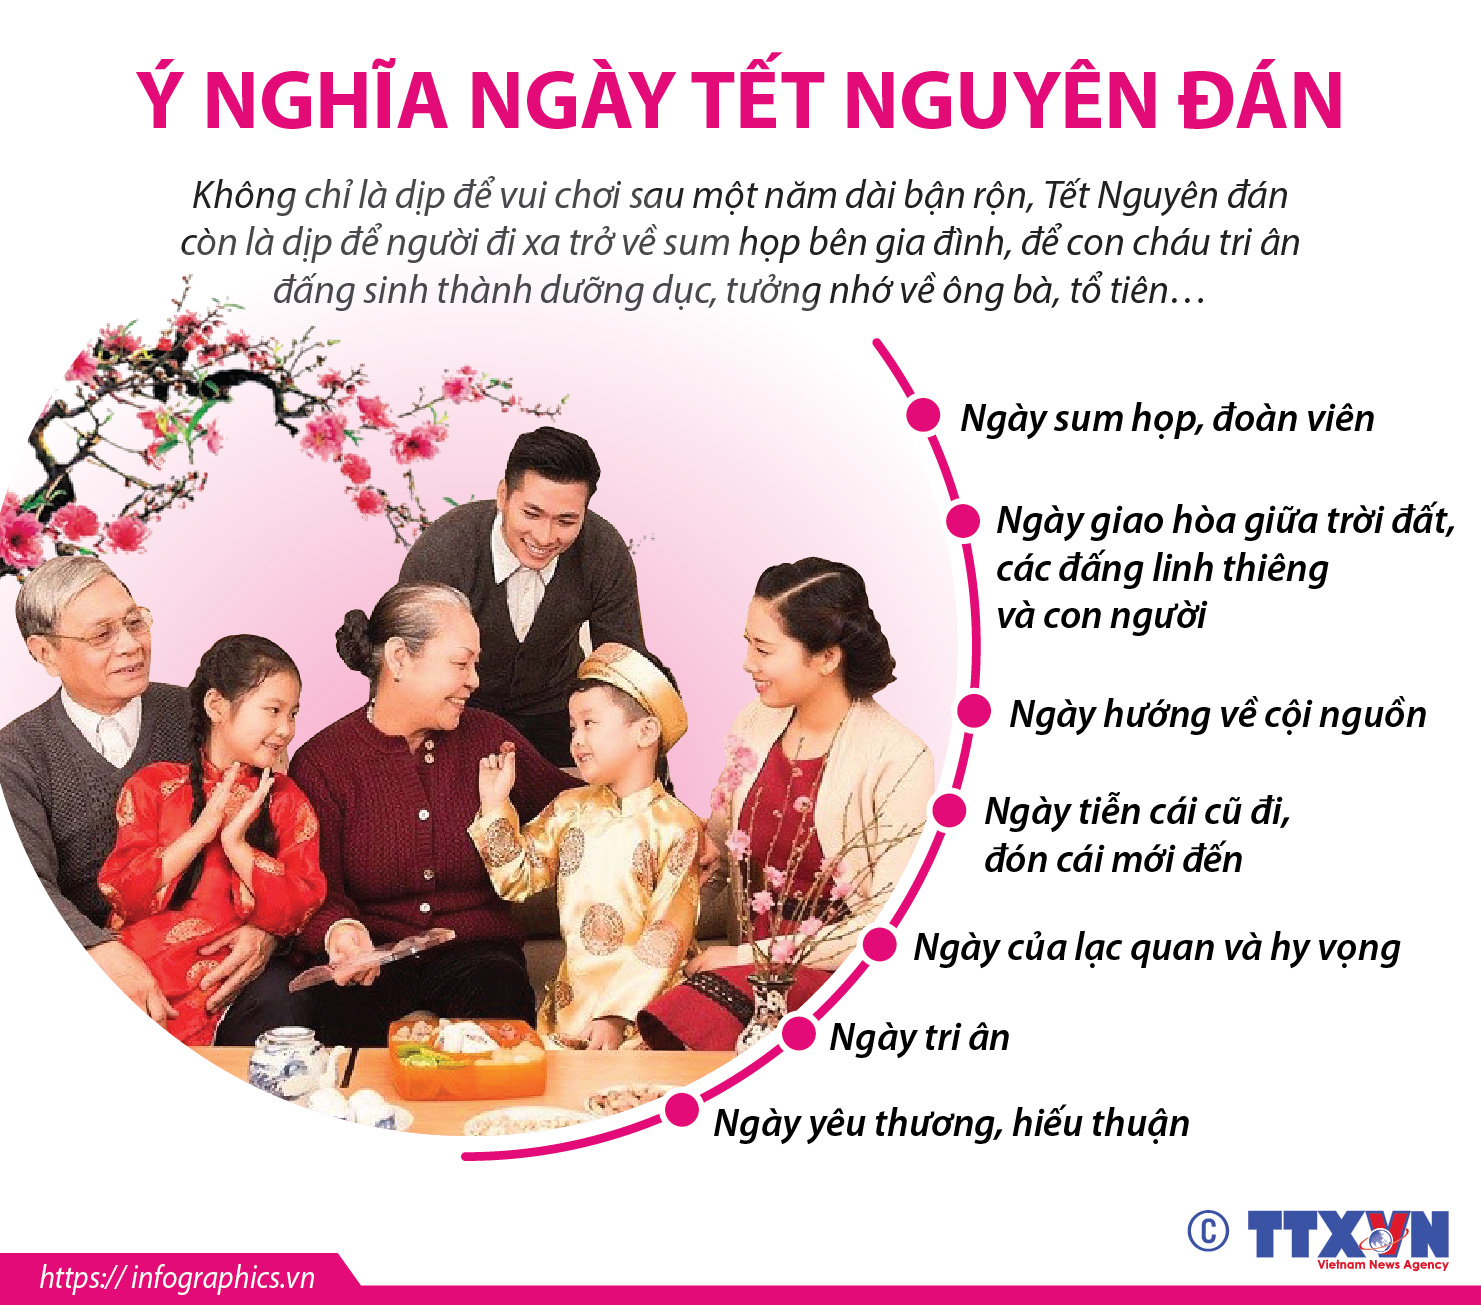 Tết Nguyên đán - ý nghĩa: Mùa xuân đang đến, các bạn đã sẵn sàng chào đón Tết Nguyên đán chưa? Hãy cùng đến với chúng tôi để tìm hiểu ý nghĩa Tết Nguyên đán - một ngày lễ truyền thống vô cùng quan trọng đối với người Việt Nam.